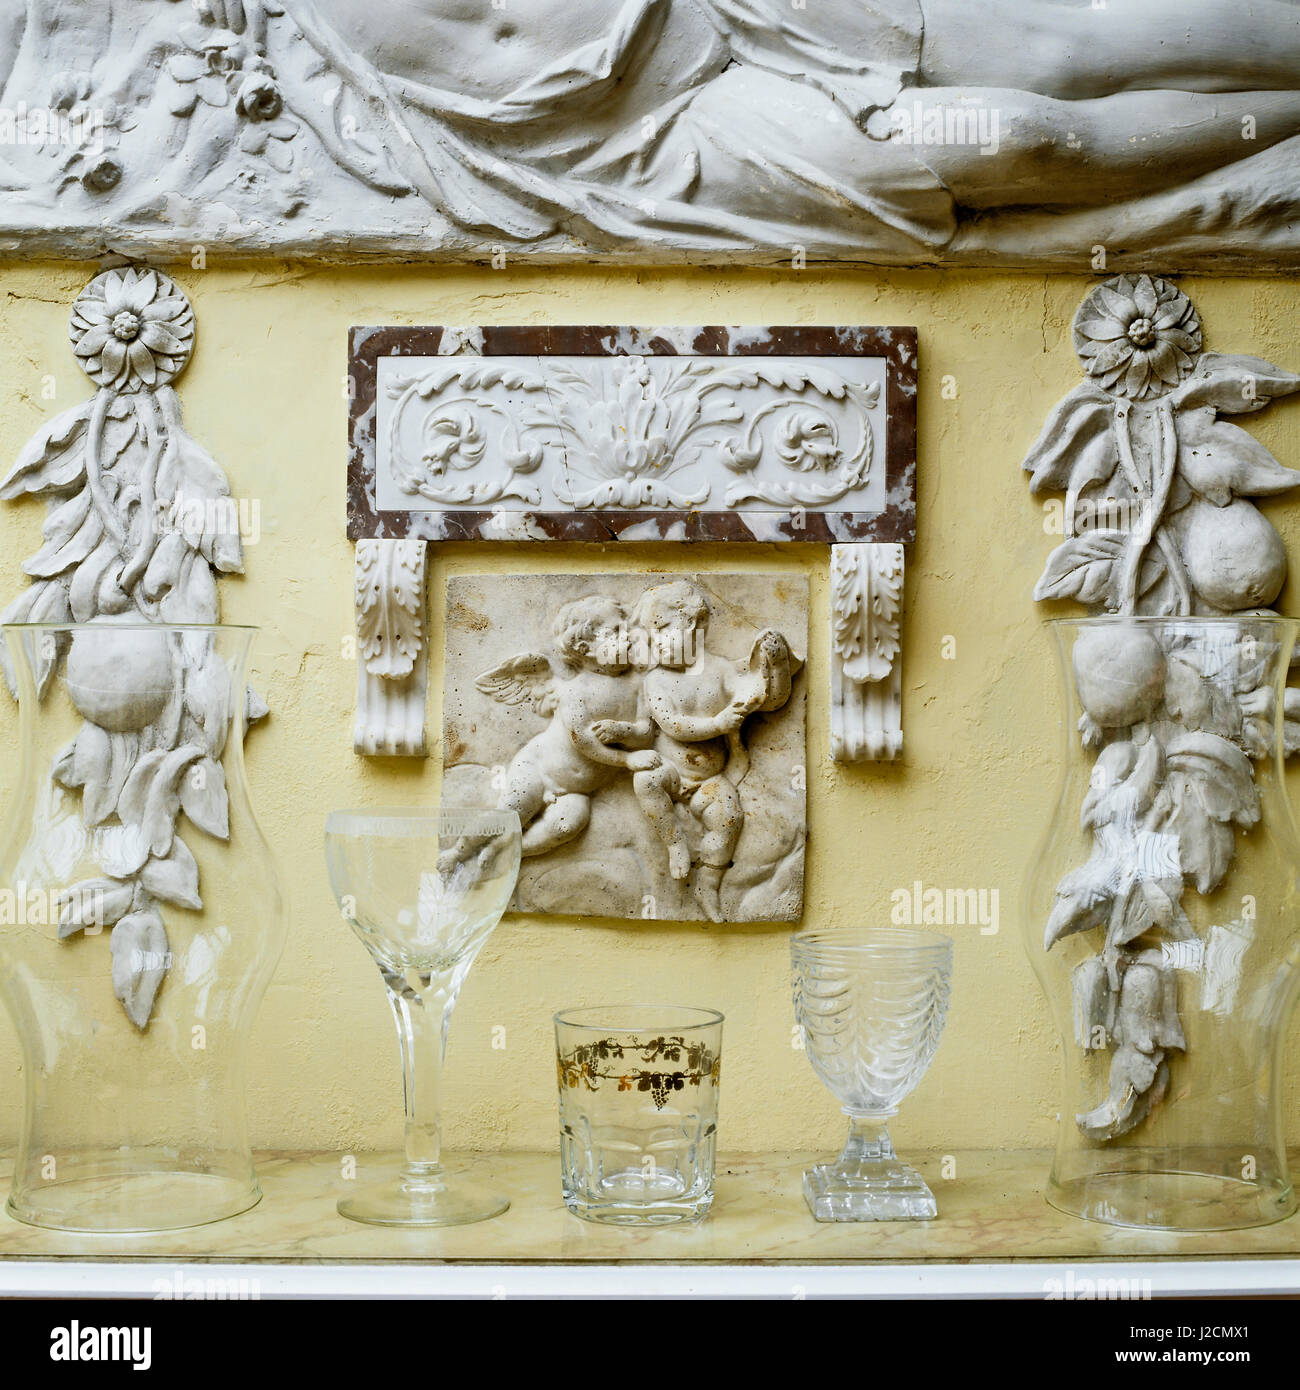 Glassware below sculpture. Stock Photo